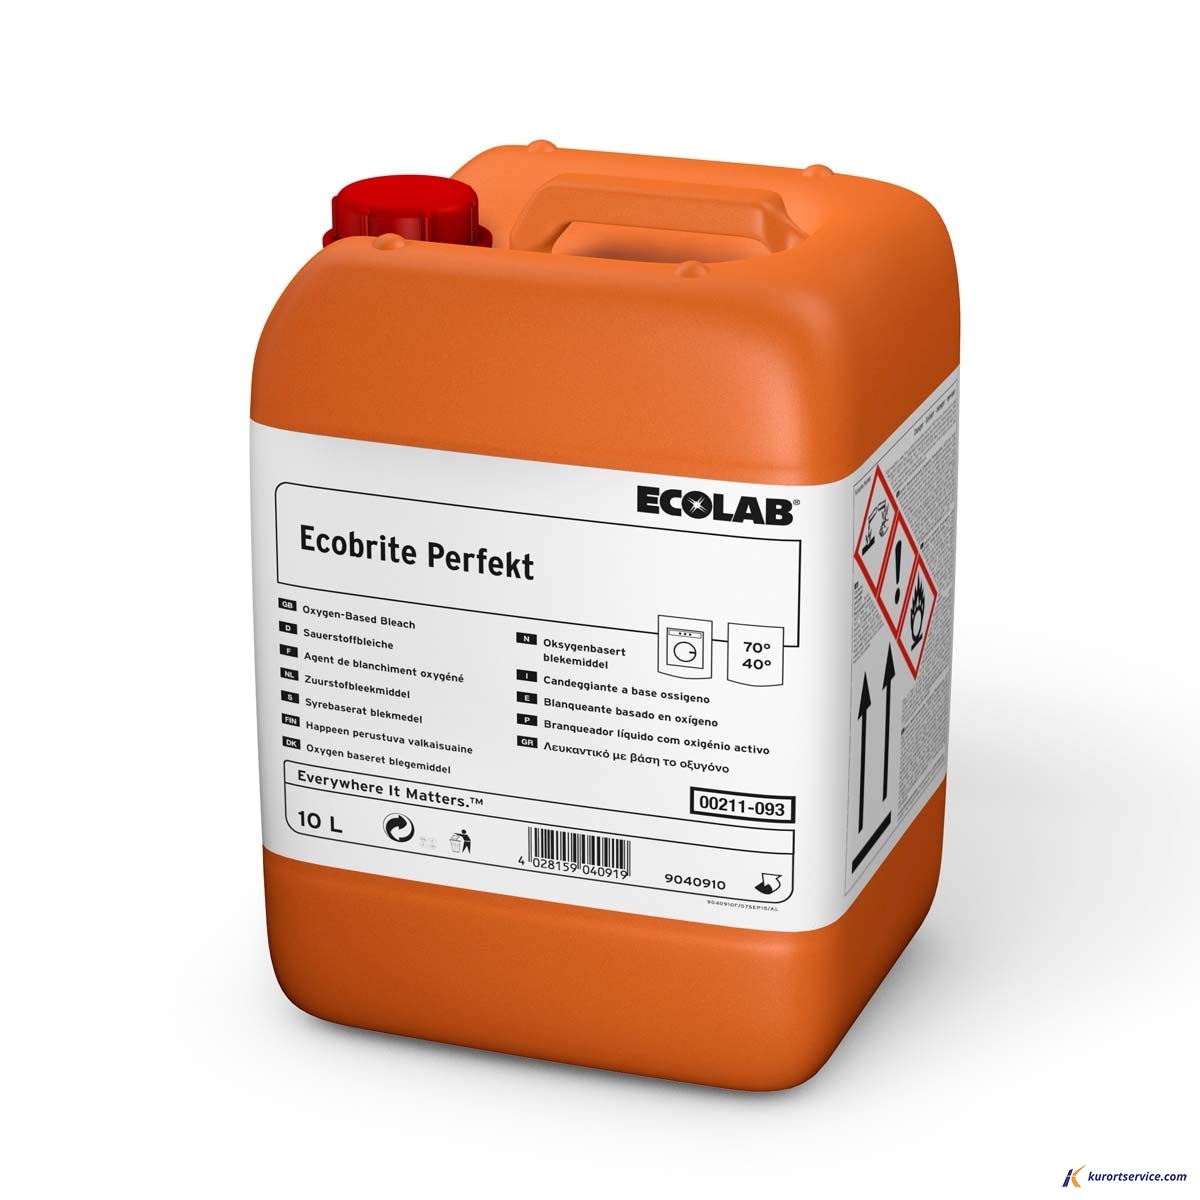 Ecolab Ecobrite Perfekt жидкий отбеливатель на основе кислорода 20кг